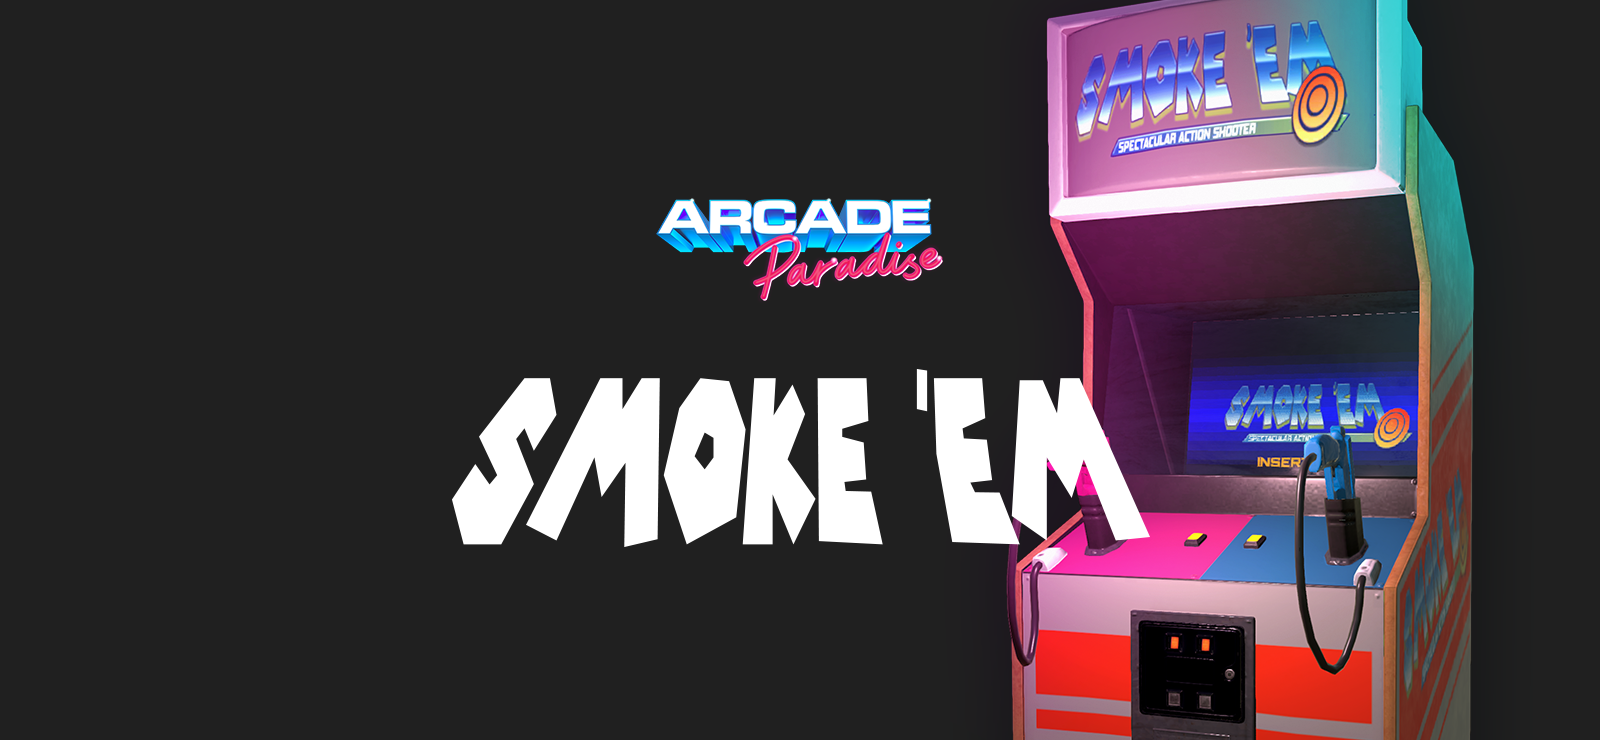 Arcade Paradise - Smoke ‘em